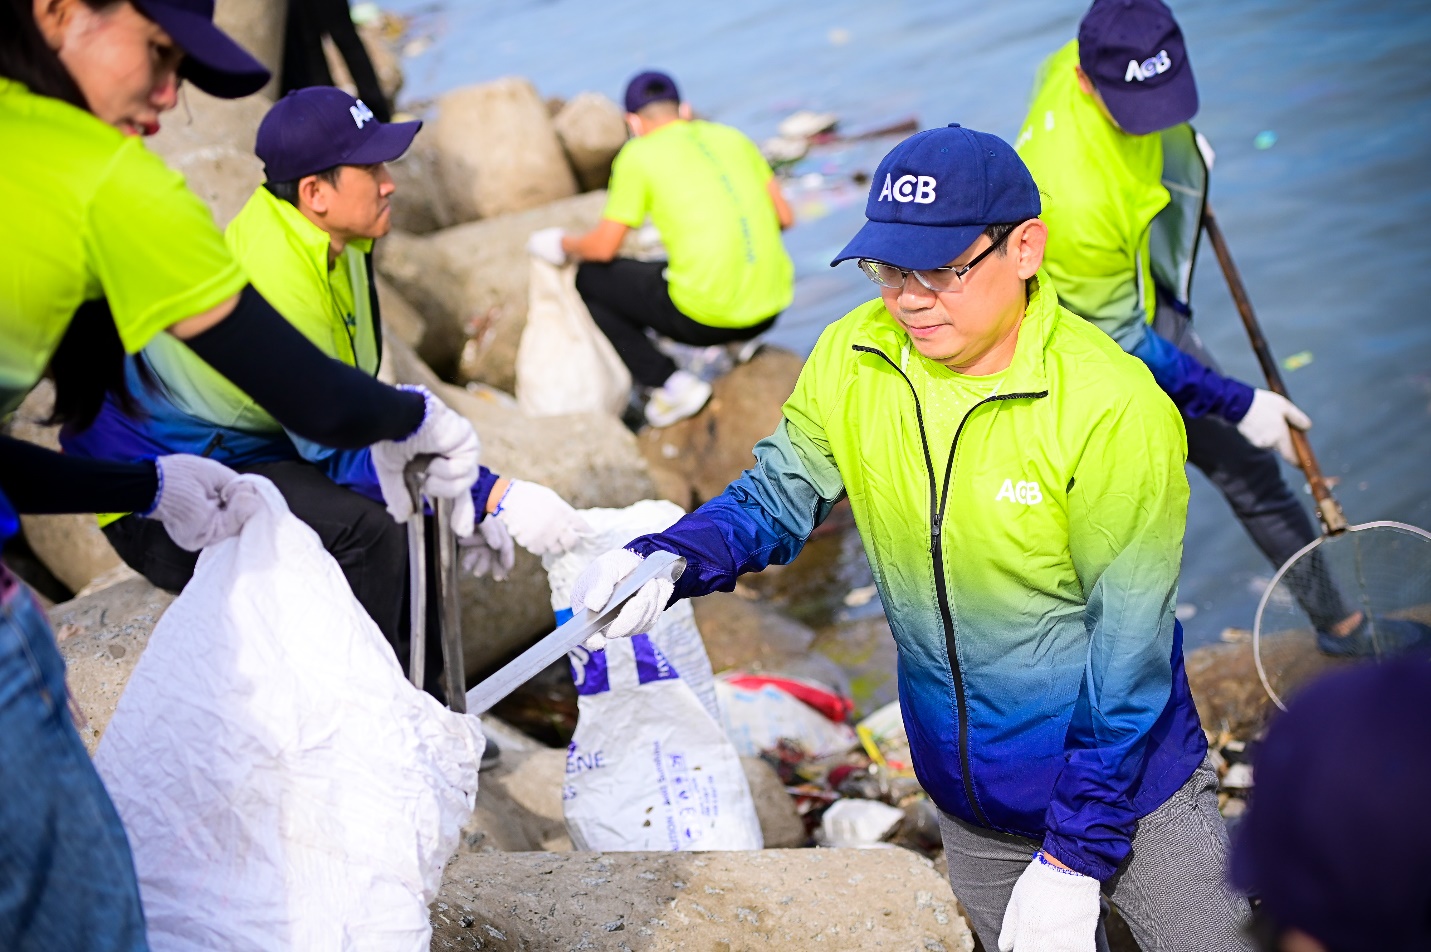 ACB tham gia dọn rác bãi biển trong Ngày Vì môi trường Phú Quốc - Ảnh 4.